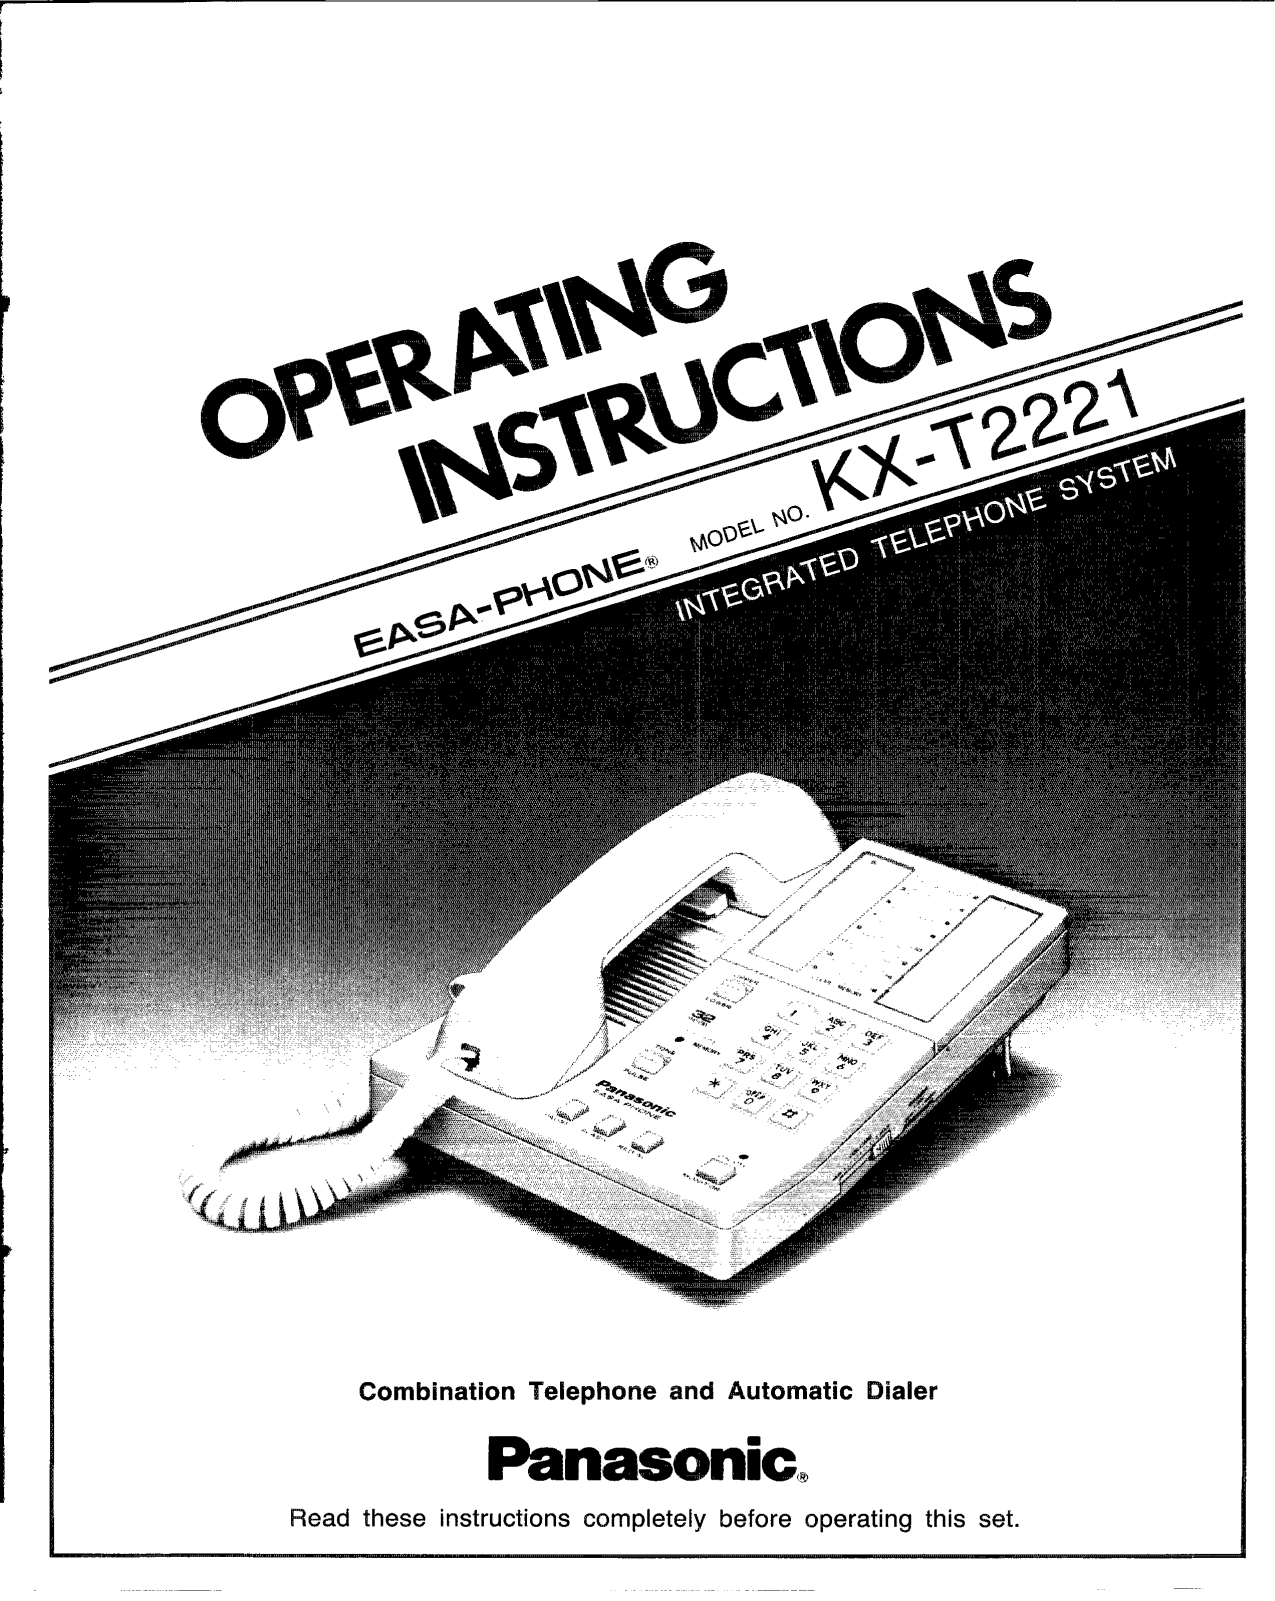 Panasonic kx-t2221 Operation Manual